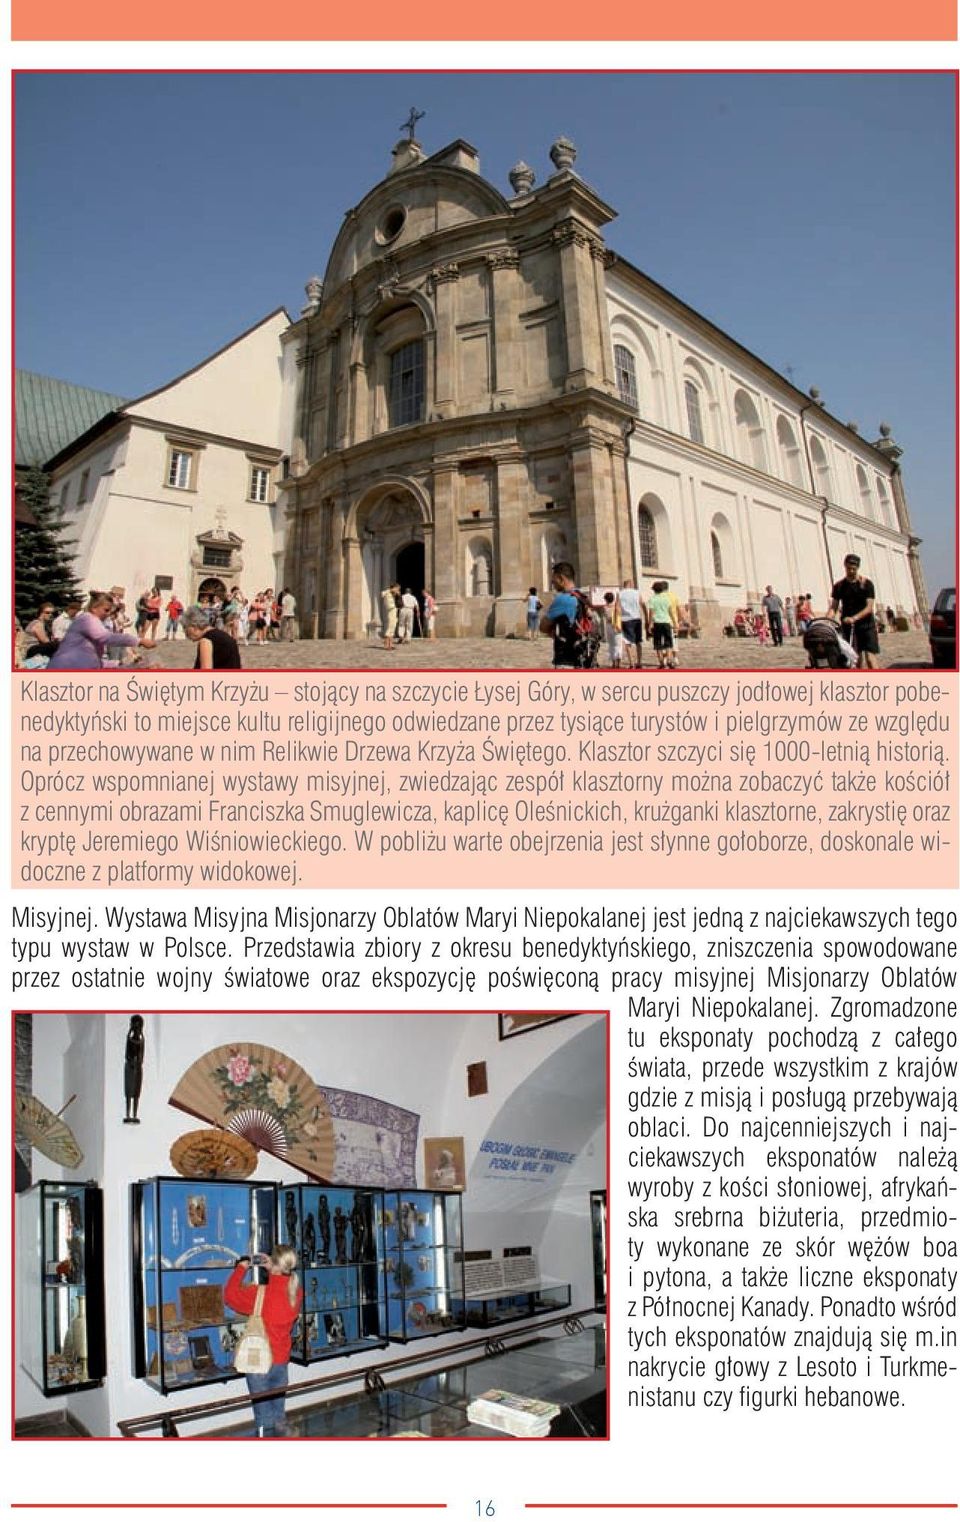 Oprócz wspomnianej wystawy misyjnej, zwiedzając zespół klasztorny można zobaczyć także kościół z cennymi obrazami Franciszka Smuglewicza, kaplicę Oleśnickich, krużganki klasztorne, zakrystię oraz